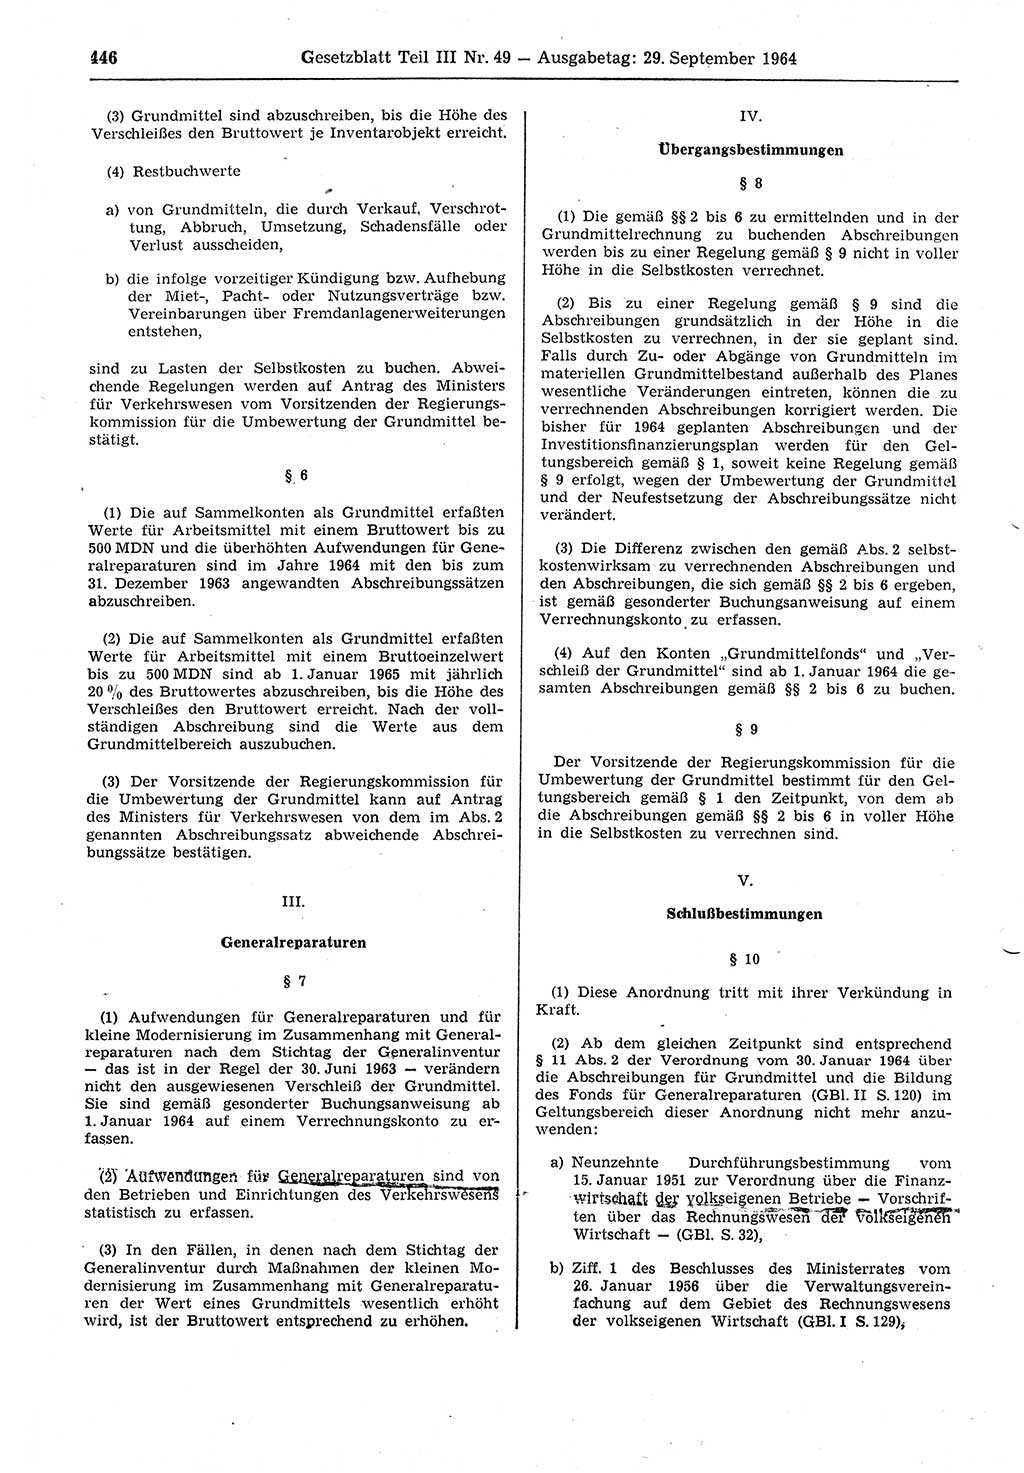 Gesetzblatt (GBl.) der Deutschen Demokratischen Republik (DDR) Teil ⅠⅠⅠ 1964, Seite 446 (GBl. DDR ⅠⅠⅠ 1964, S. 446)